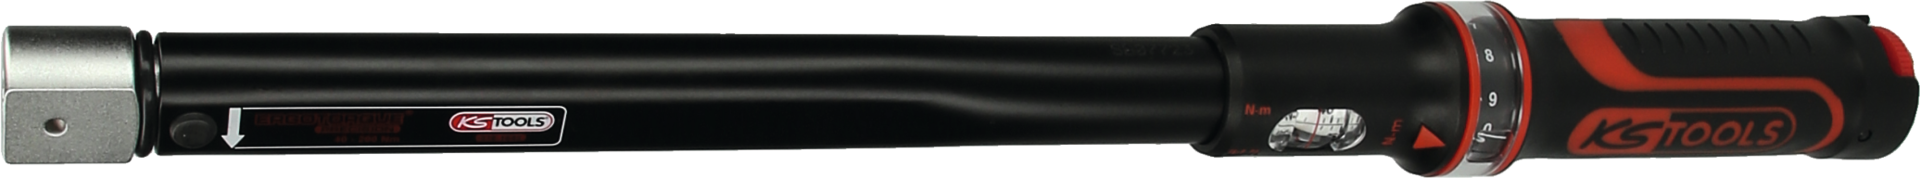 Drehmomentschlüssel Einsteckvierkant inkl. Werkszertifikat 14x18mm L470mm 40-200Nm